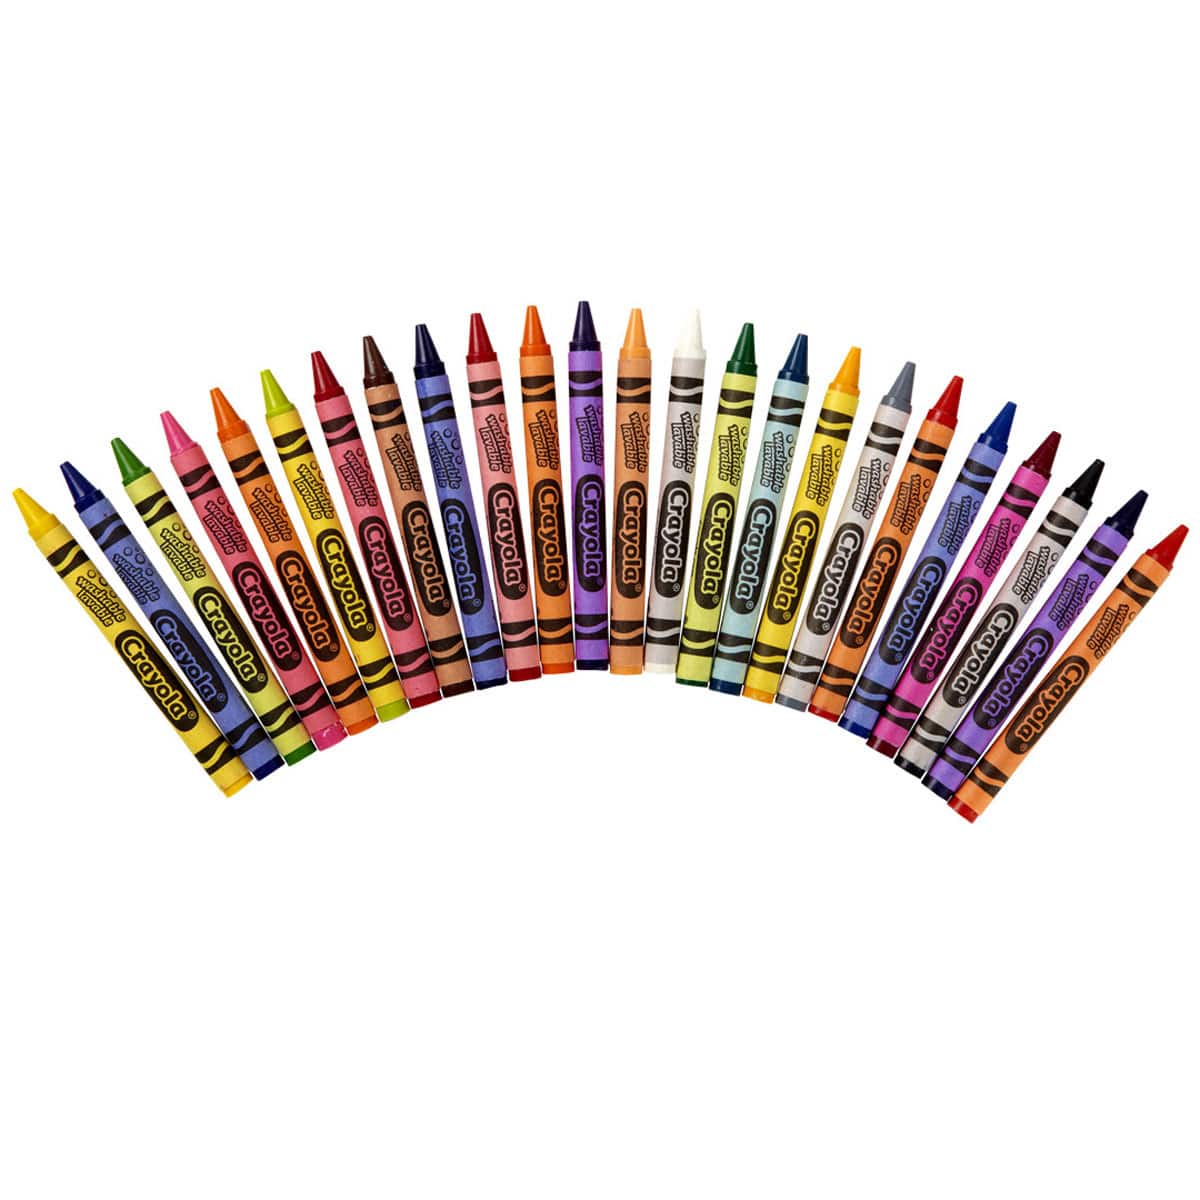 24 Count Crayola Crayons